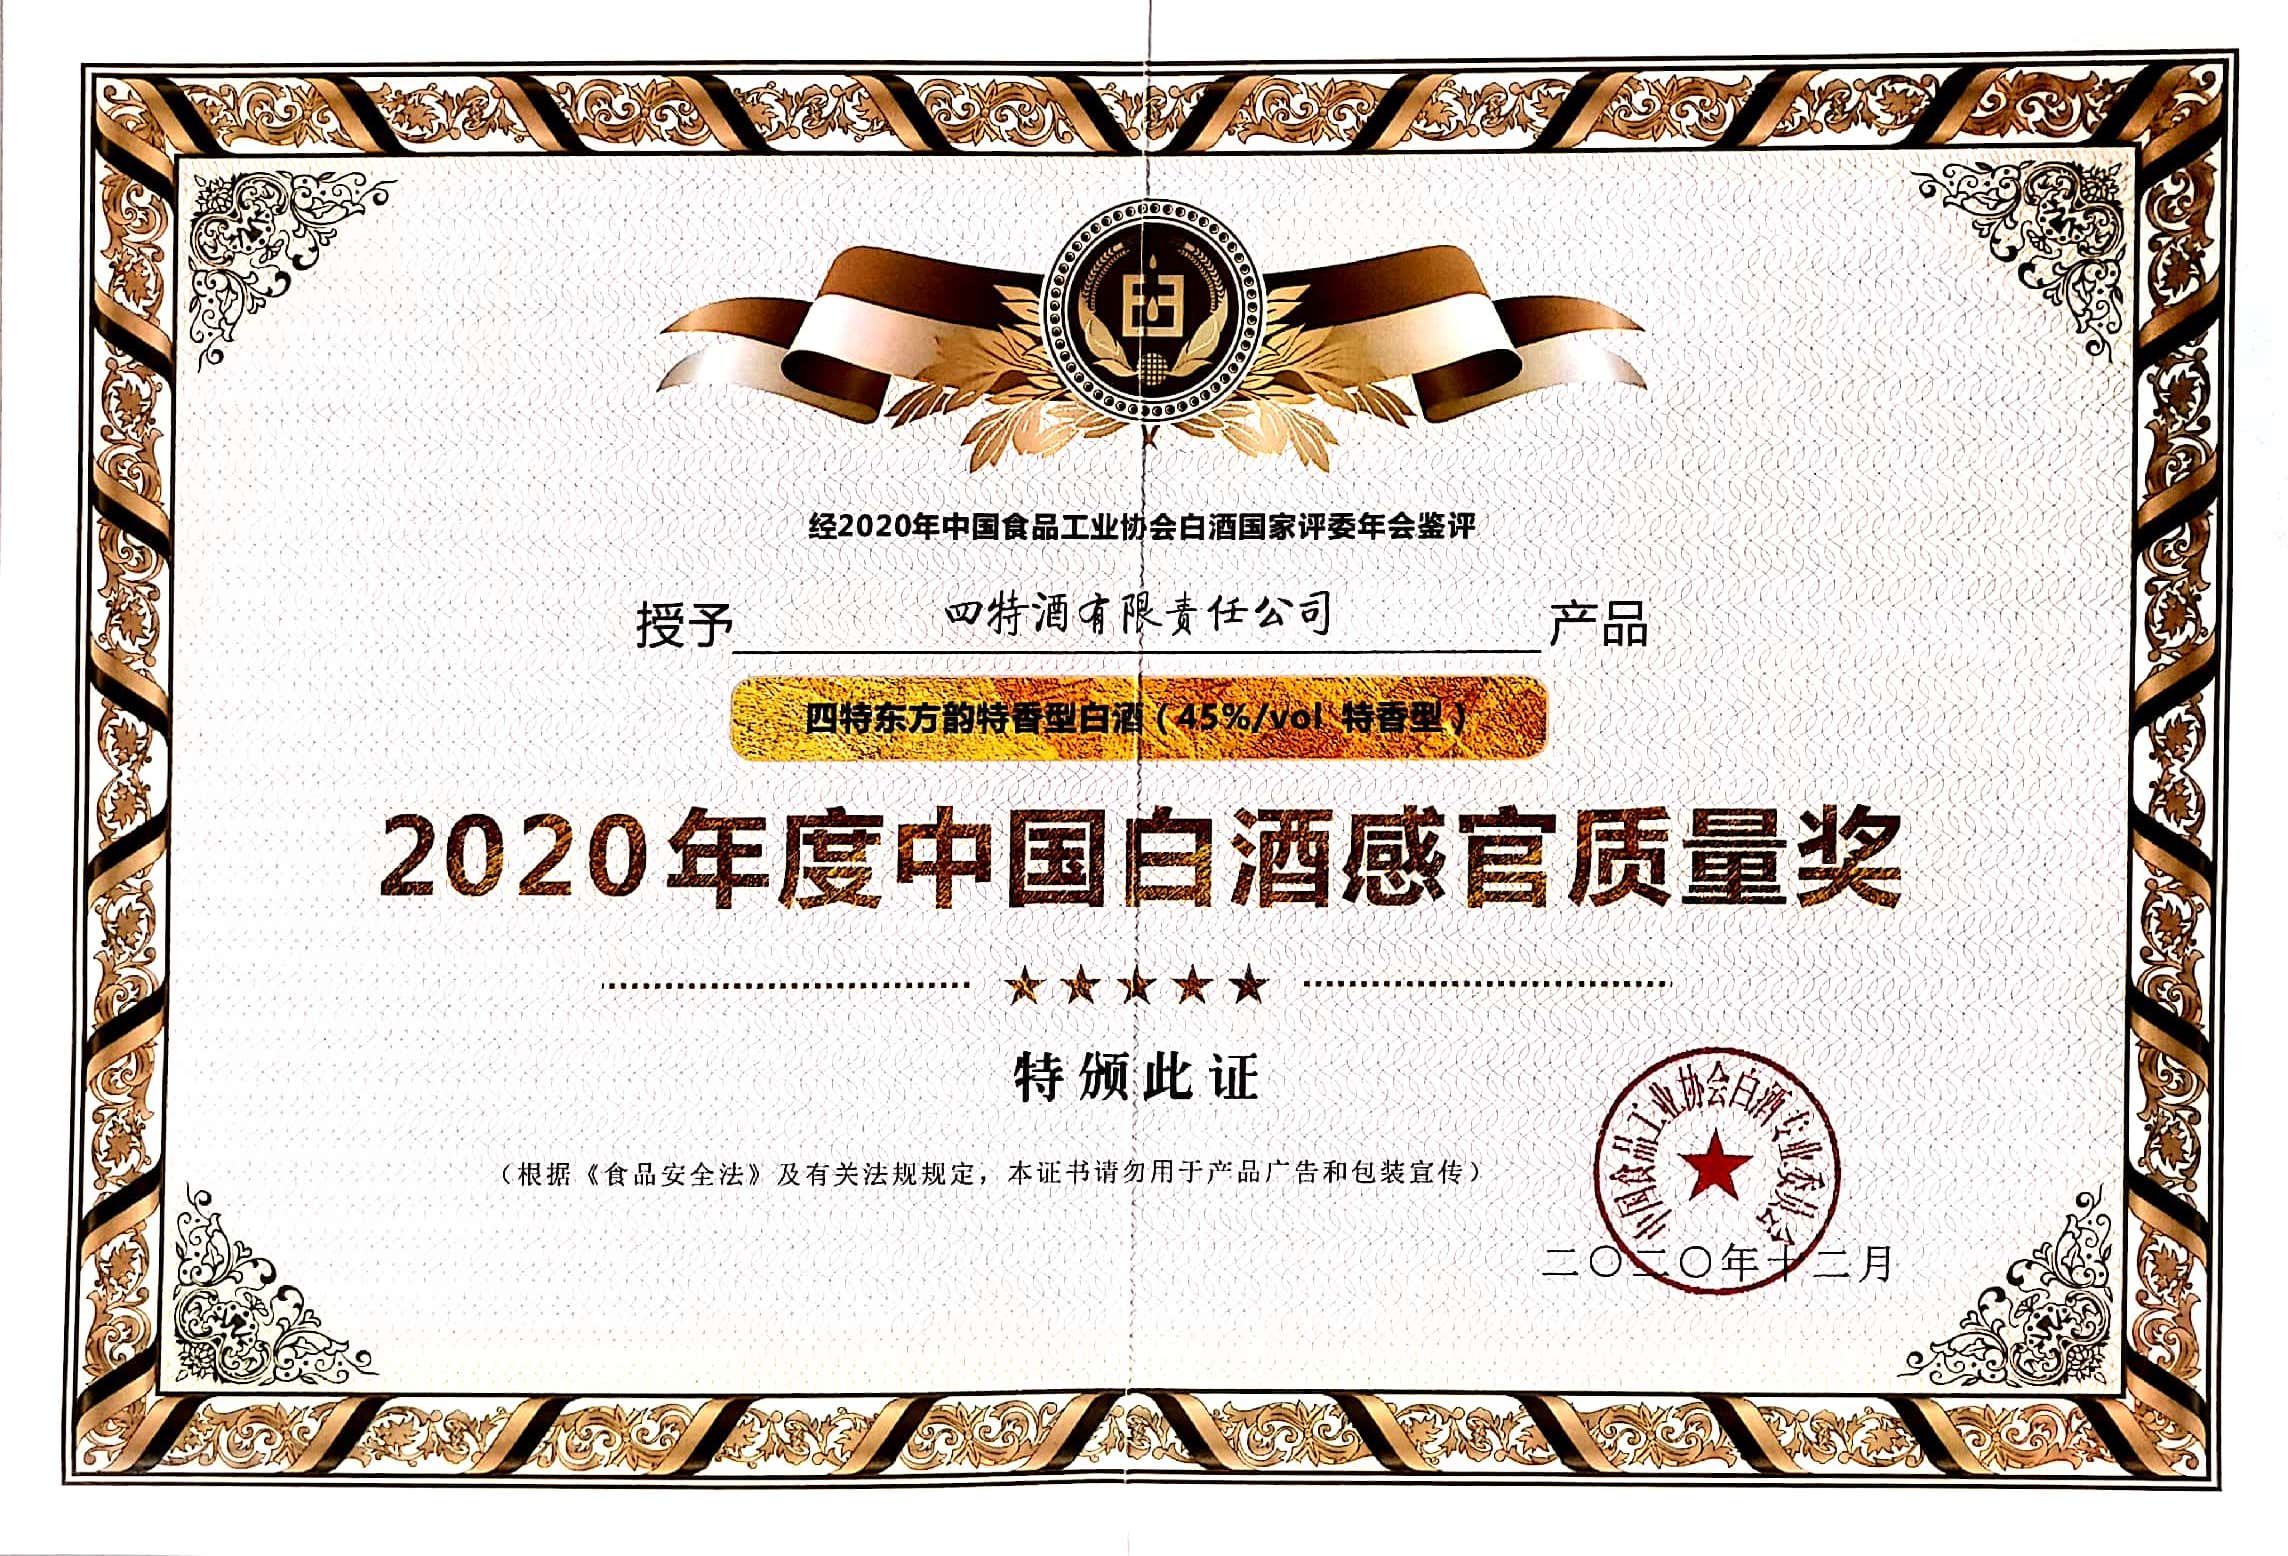 女儿的朋友5中汉字晋通话在线观看东方韵特香型白酒（45%vol特香型）获评“2020年度中国白酒感官质量奖”腻版。